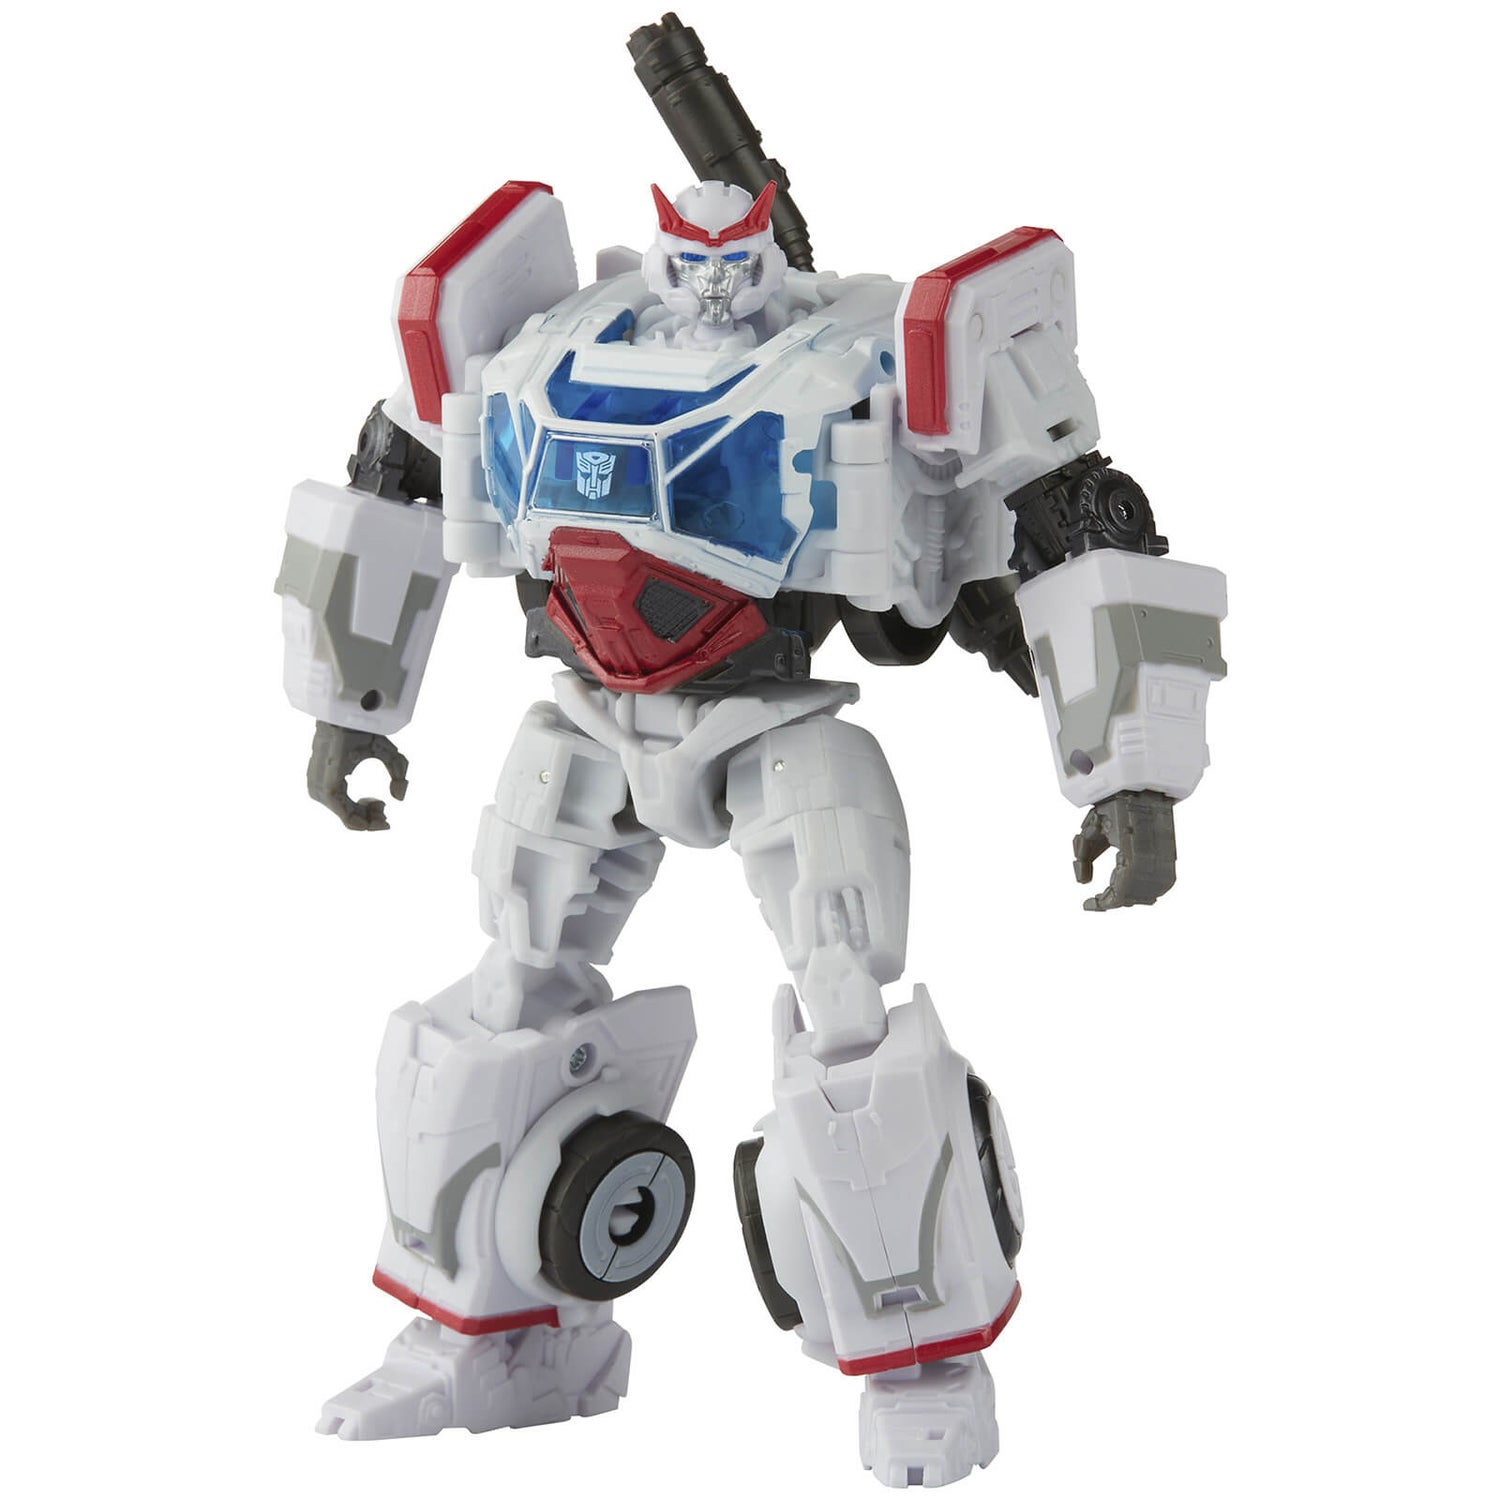 Hasbro Transformers Studio Series 82 Deluxe Transformers: Autobot Ratchet Action Figure